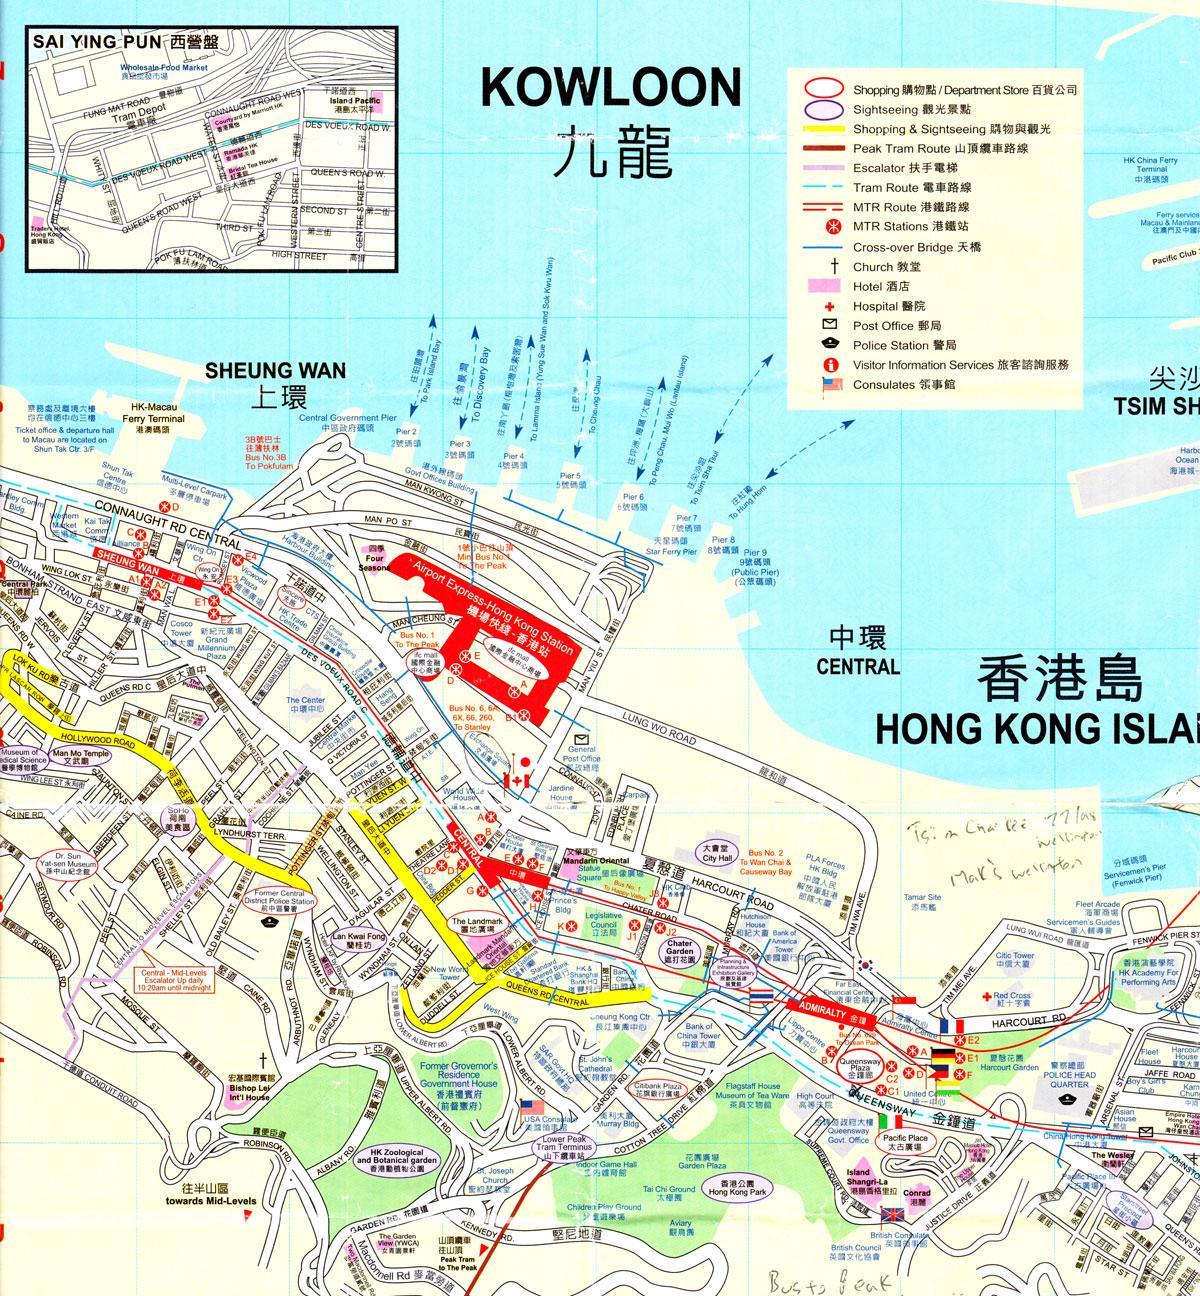 λιμάνι του Χονγκ Κονγκ εμφάνιση χάρτη